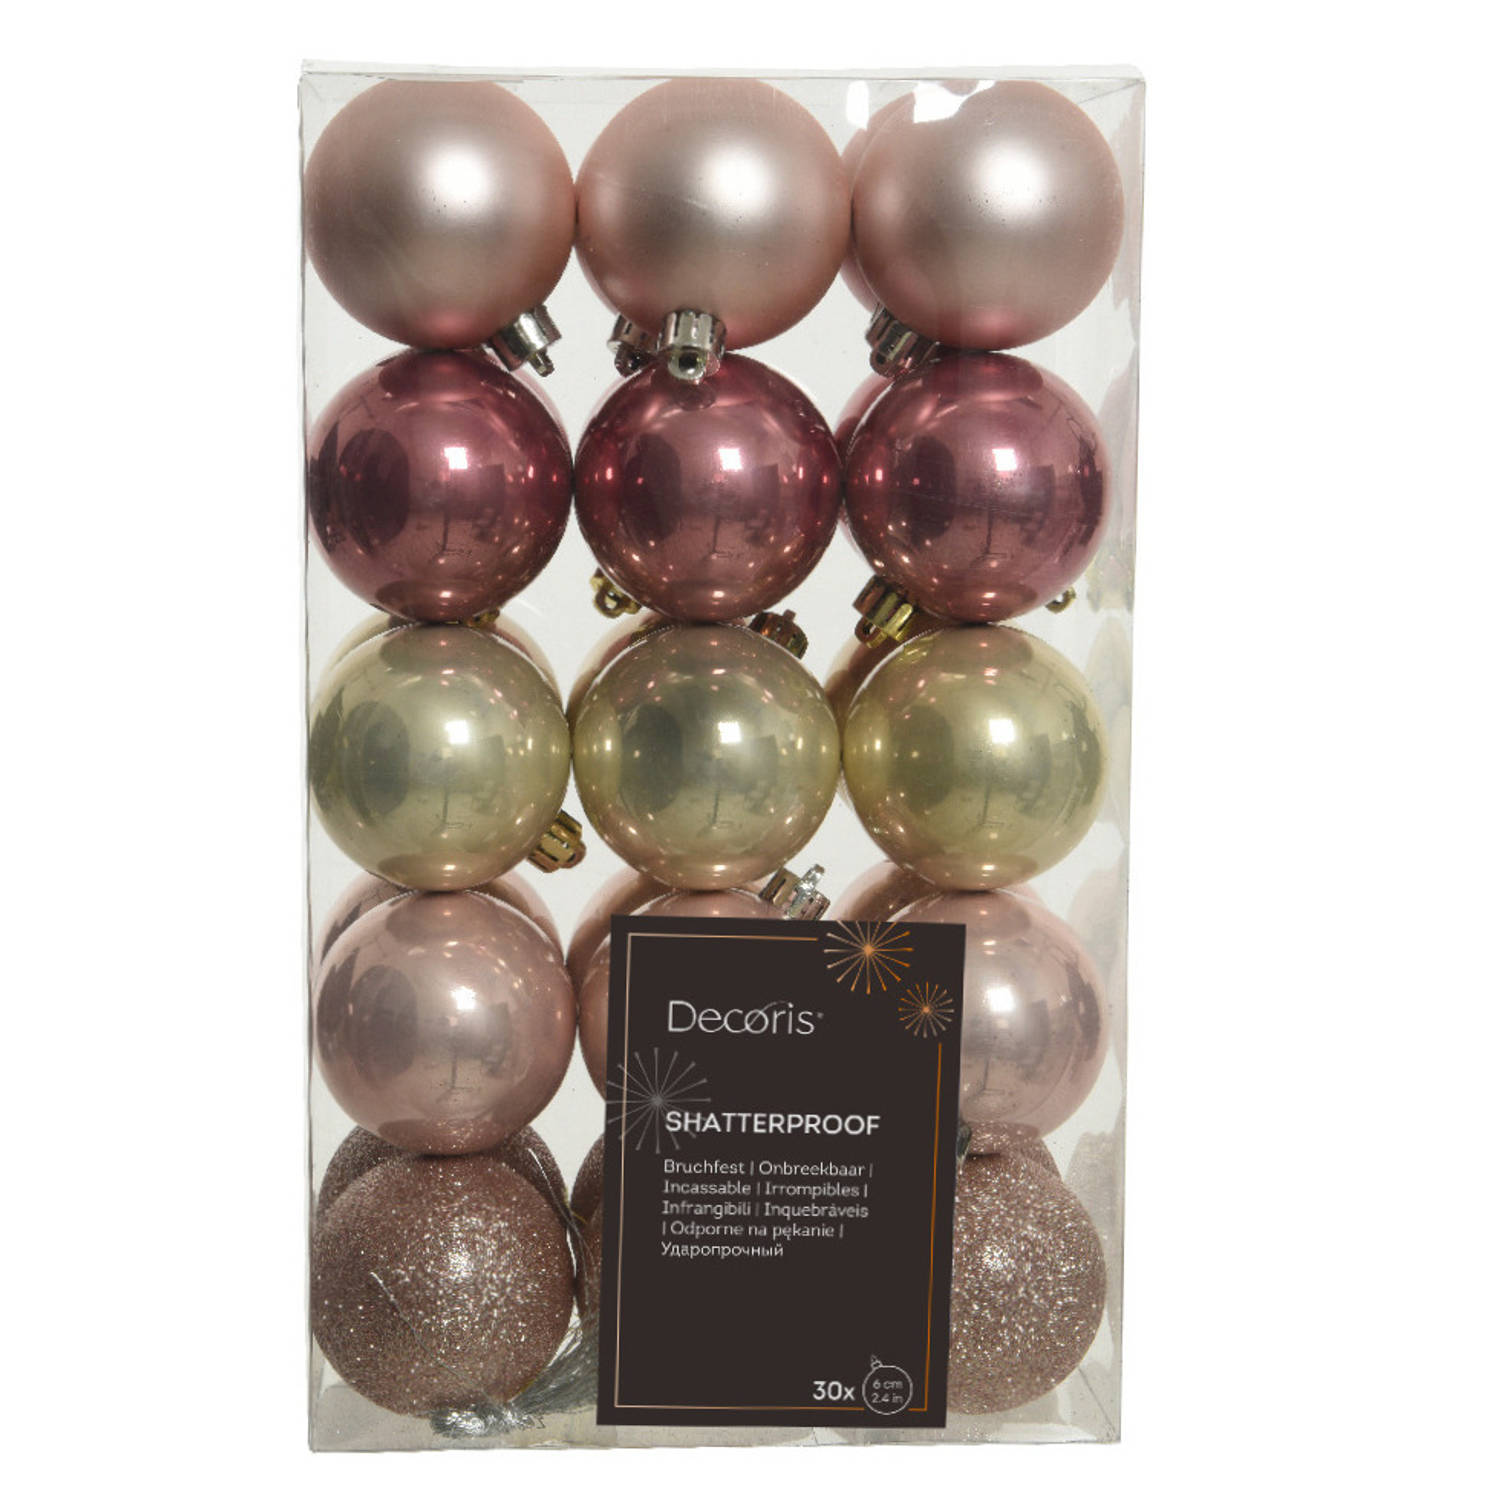 Decoris kerstballen 30x -lichtroze-oudroze-champagne- 6cm -kunststof Kerstbal